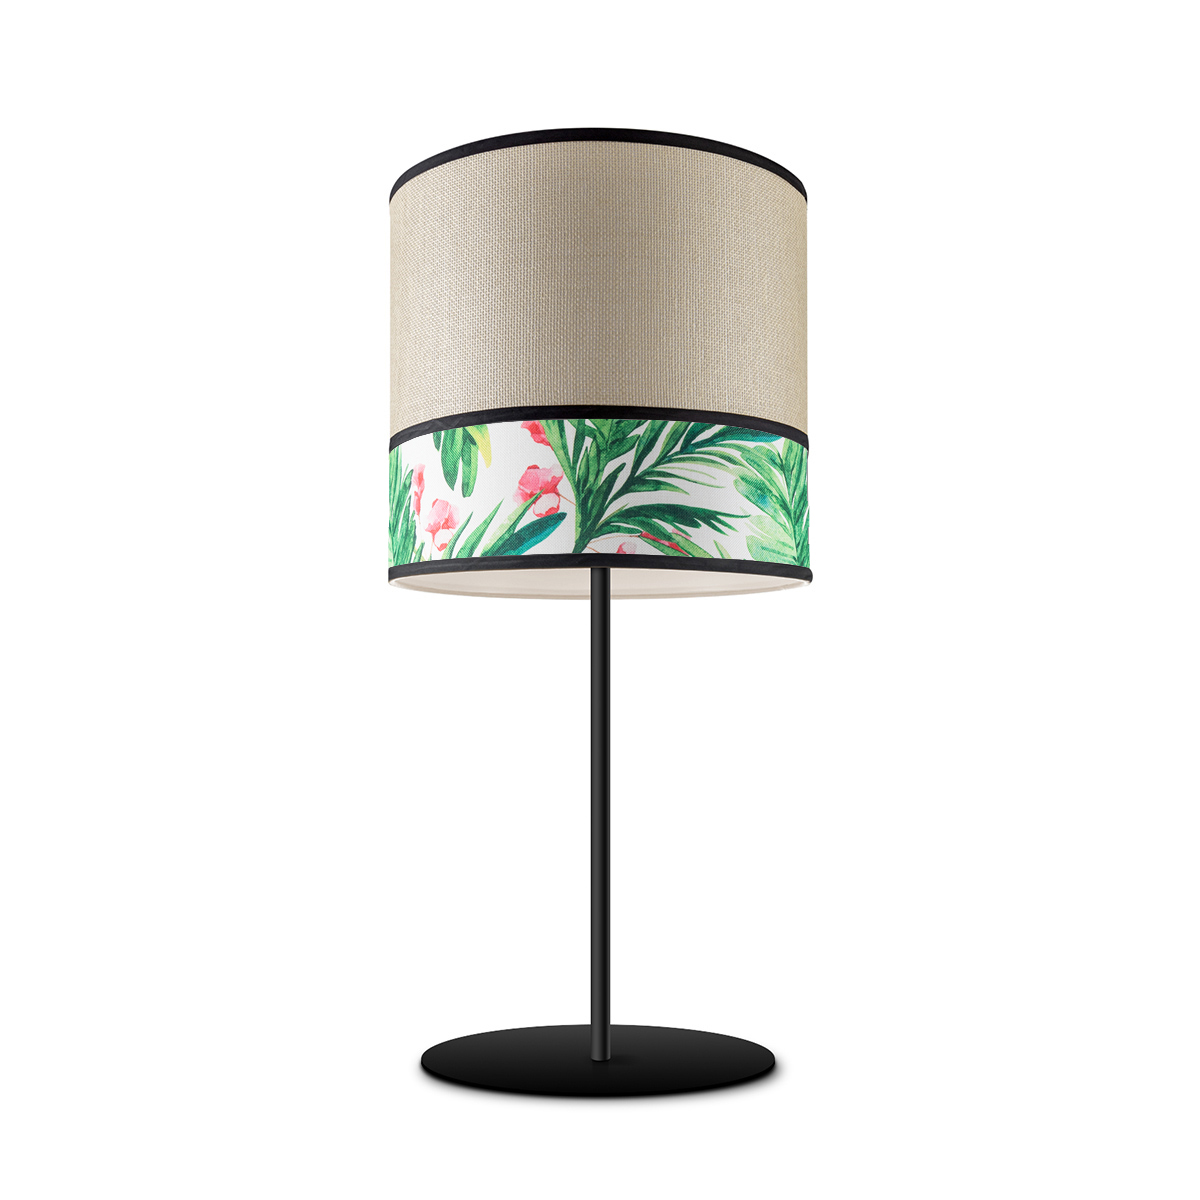 Tangla lighting - TLT7041-25B - Table lamp 1 Light - metal + paper + TC fabric - spring - grass - E27